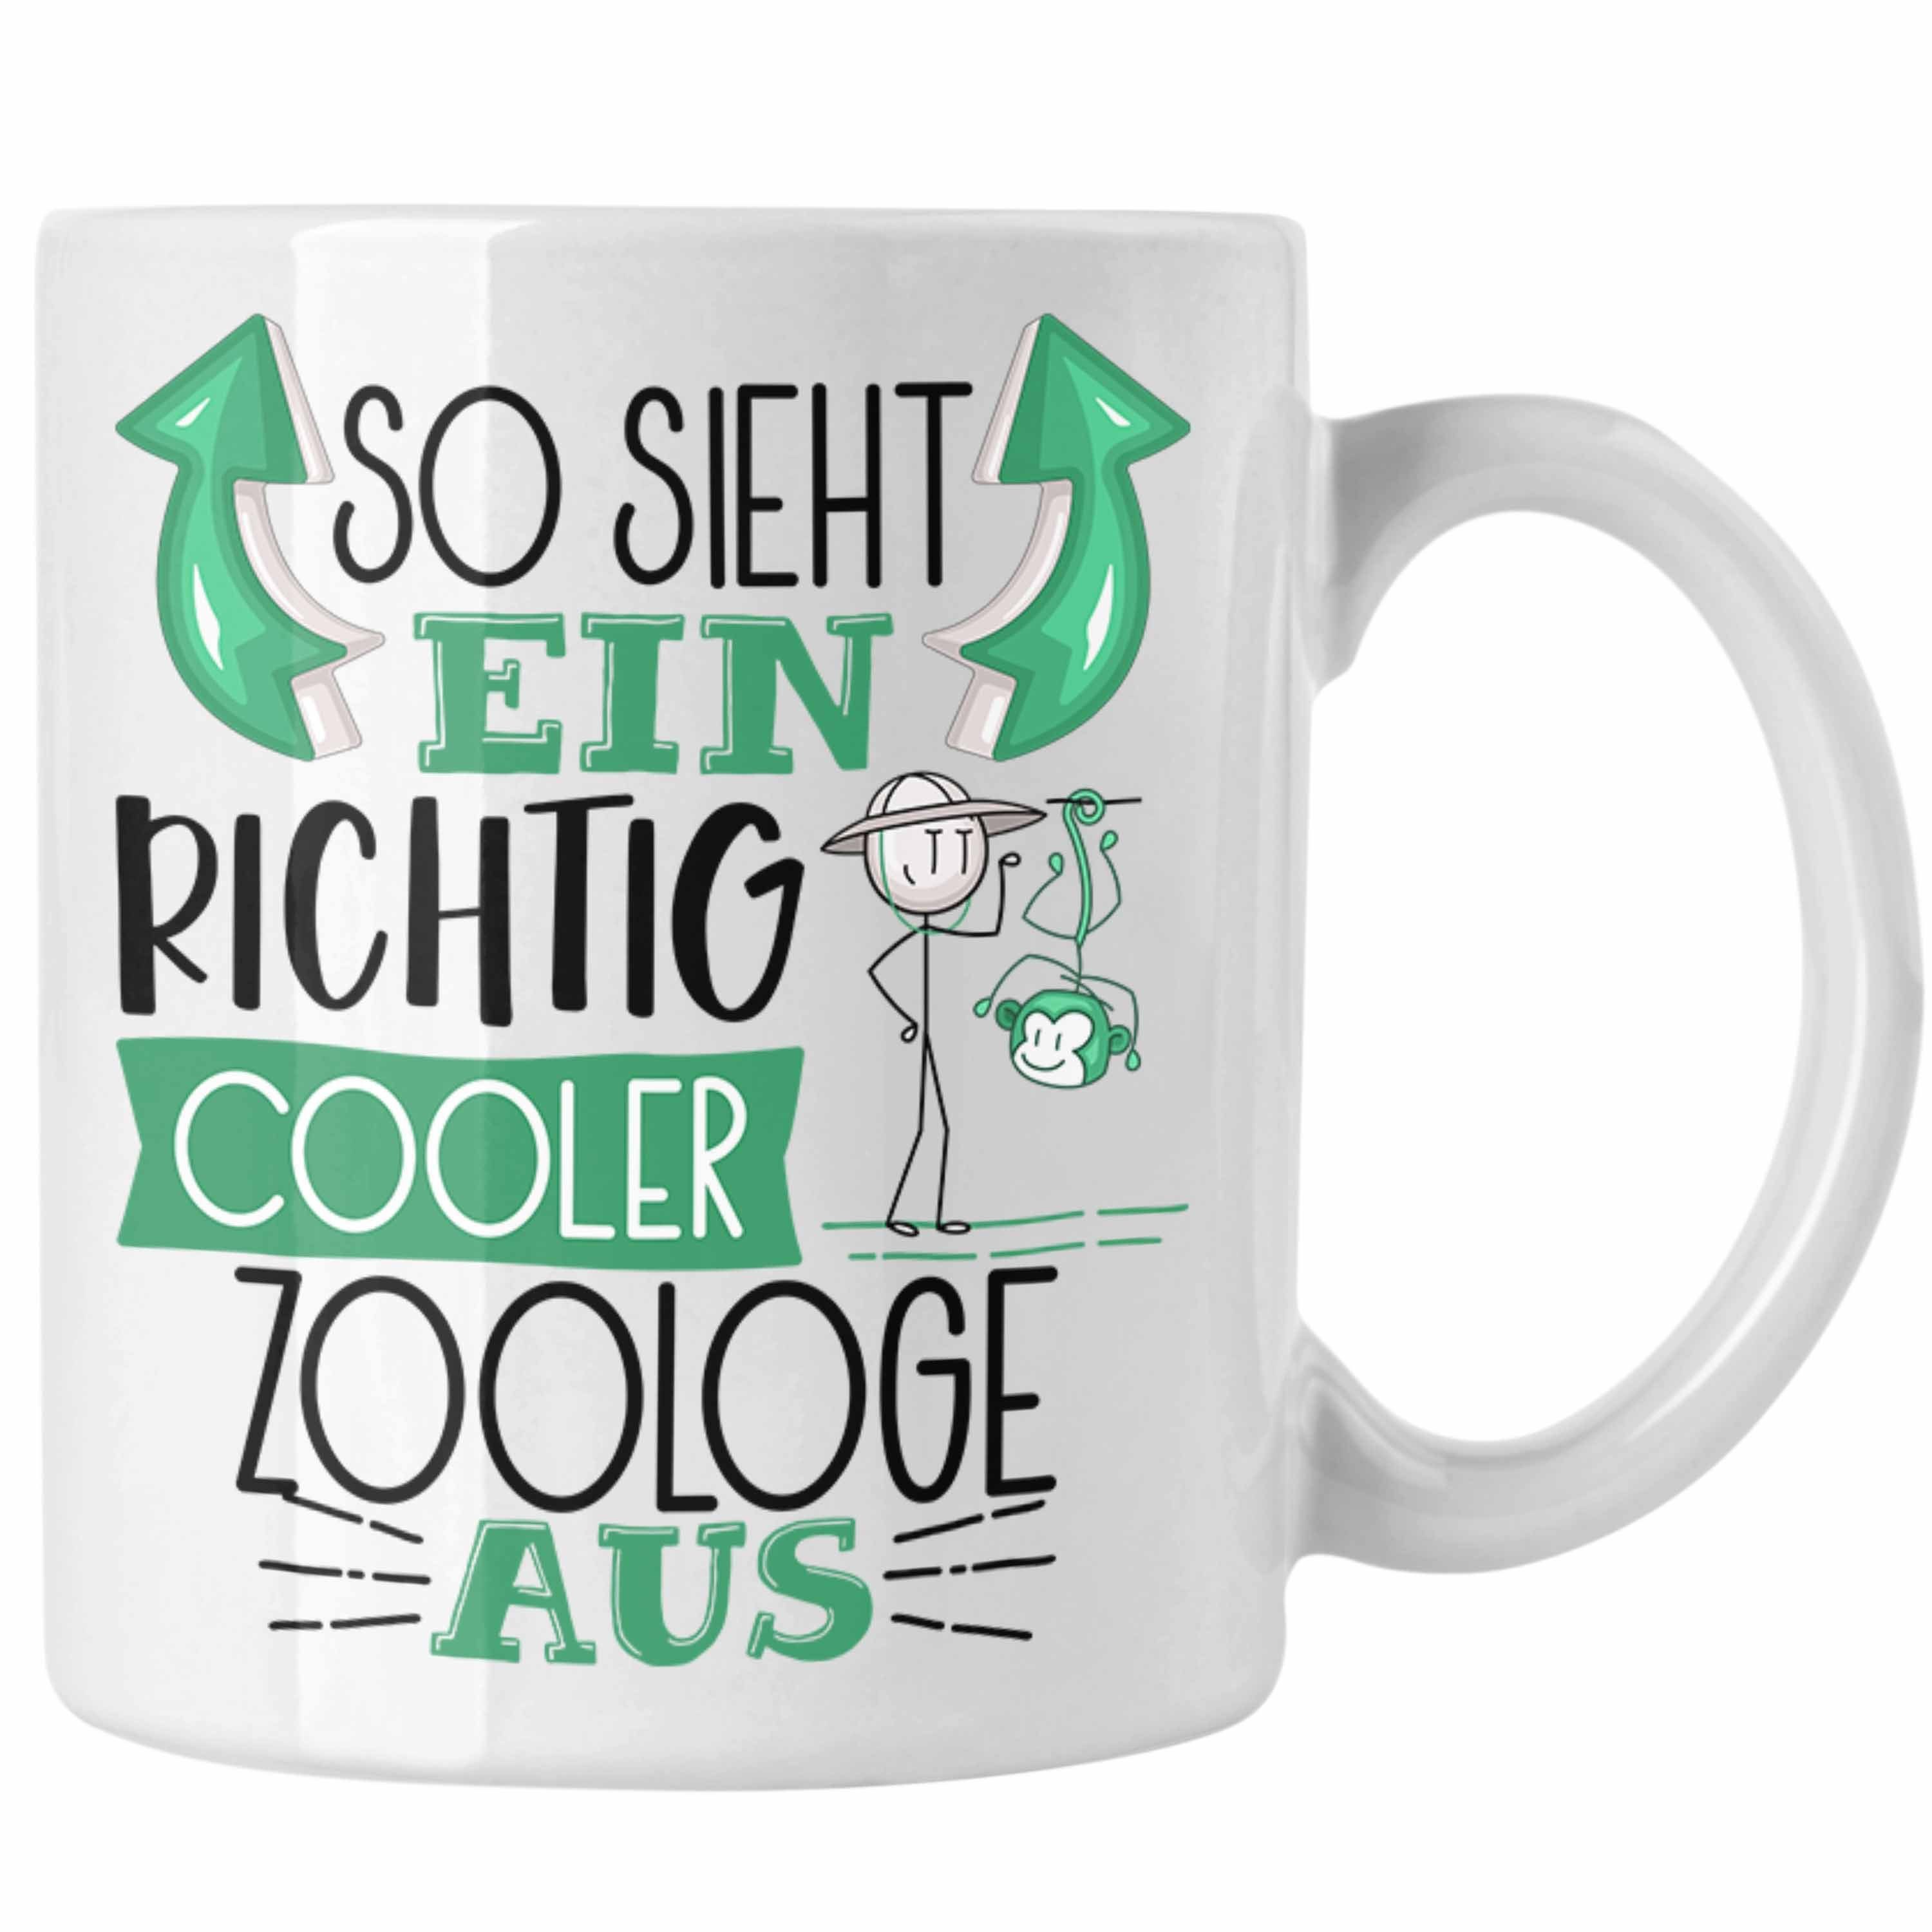 Sieht Ein So Tasse Zoologe RIchtig Zoologe Aus Tasse Gesche Trendation Geschenk Cooler Weiss